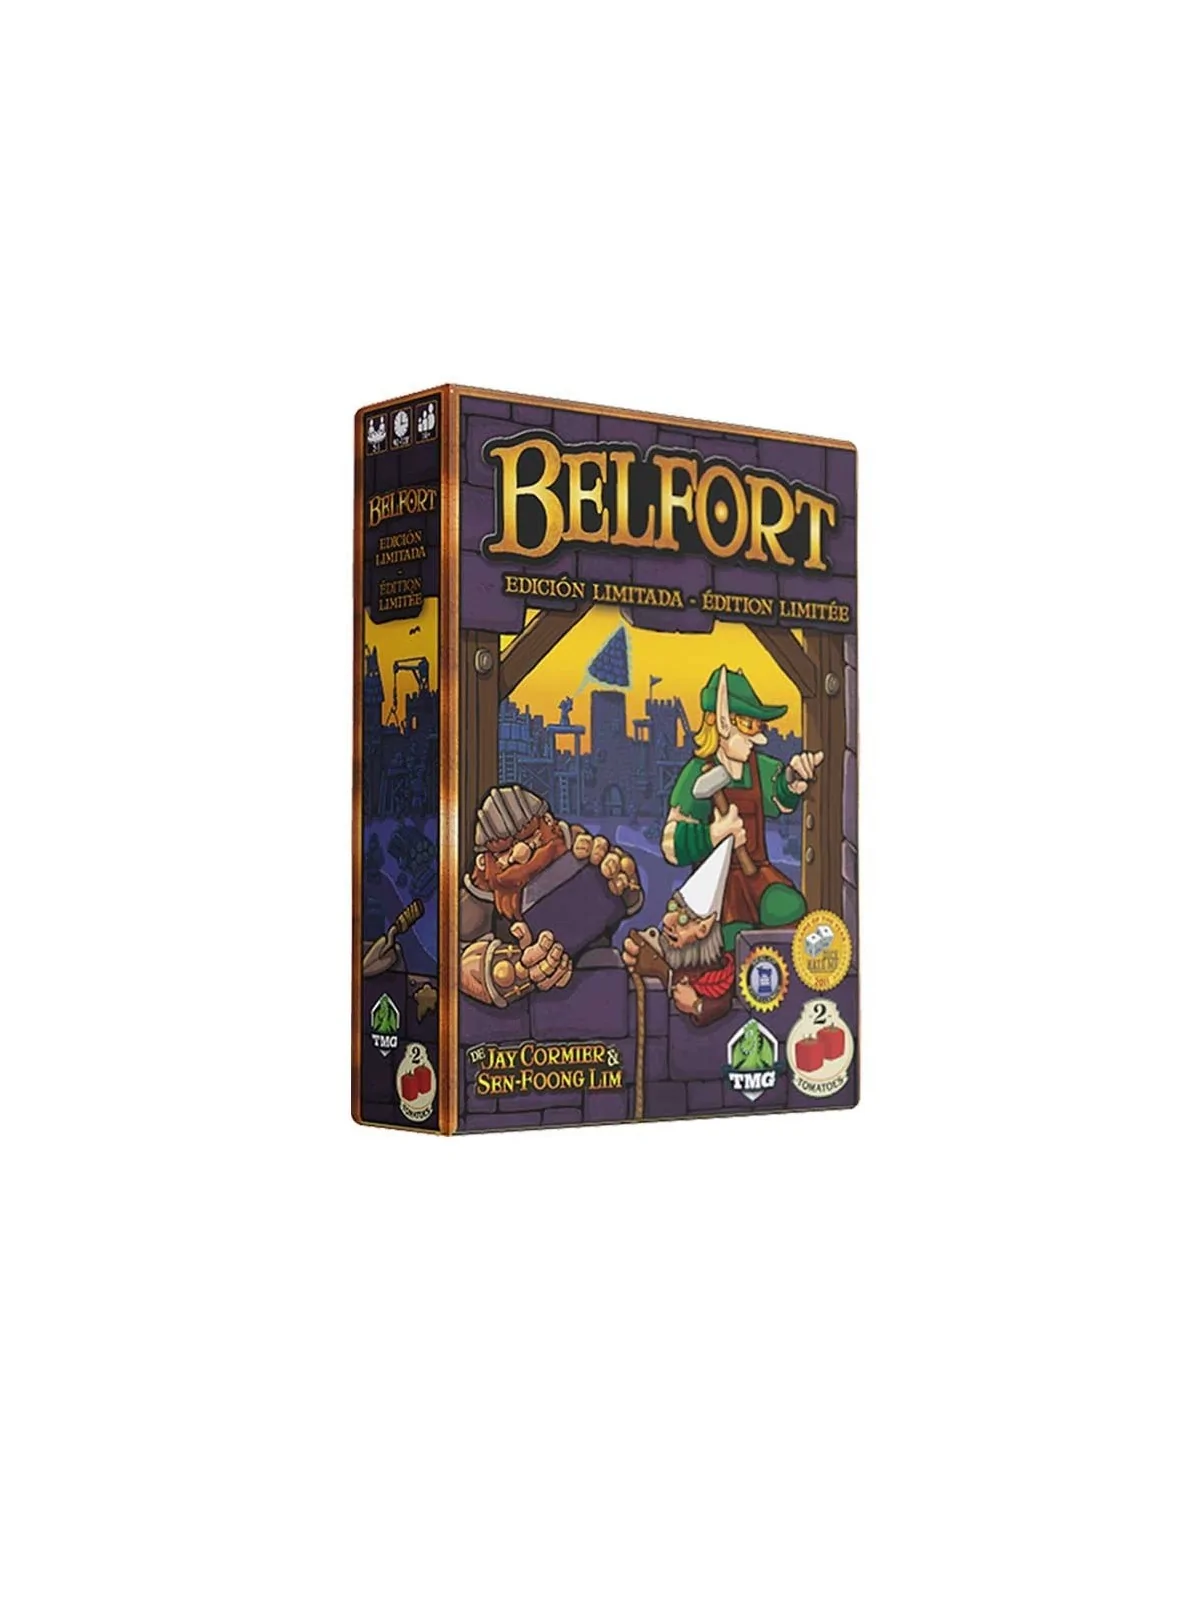 Comprar Belfort Edición Limitada barato al mejor precio 58,46 € de Two